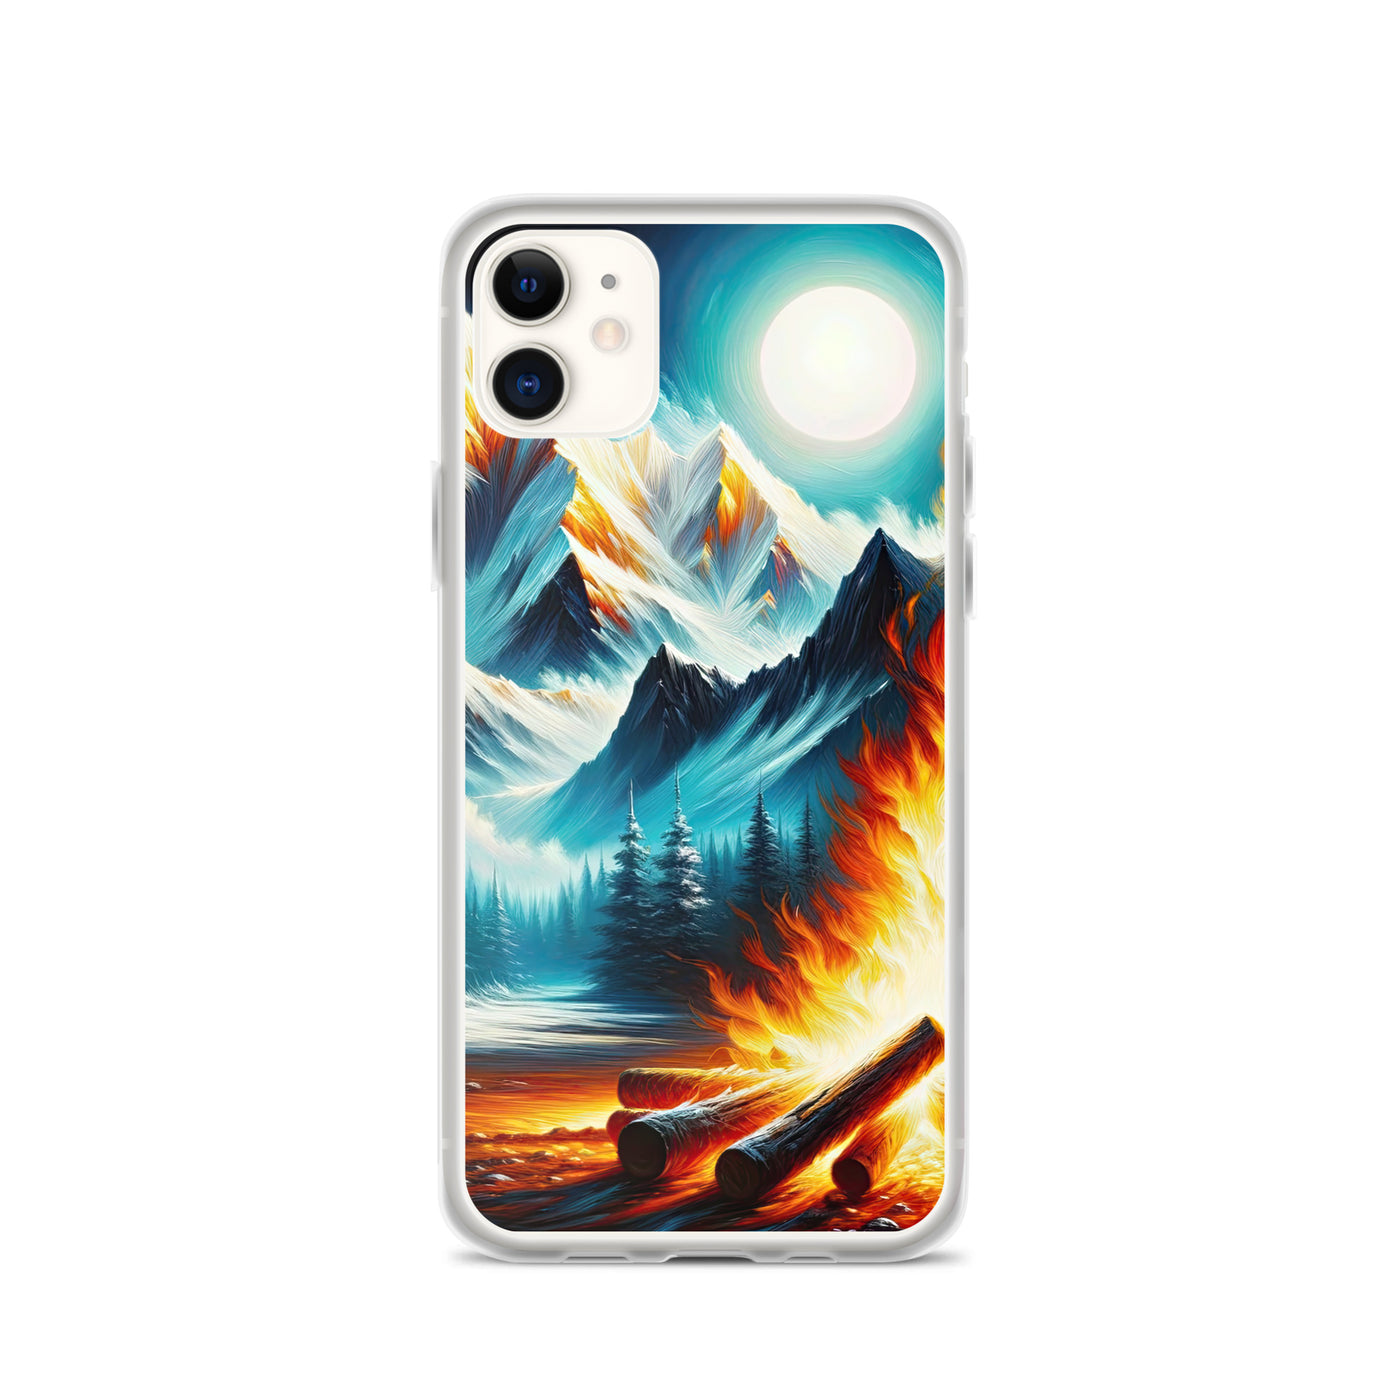 Ölgemälde von Feuer und Eis: Lagerfeuer und Alpen im Kontrast, warme Flammen - iPhone Schutzhülle (durchsichtig) camping xxx yyy zzz iPhone 11